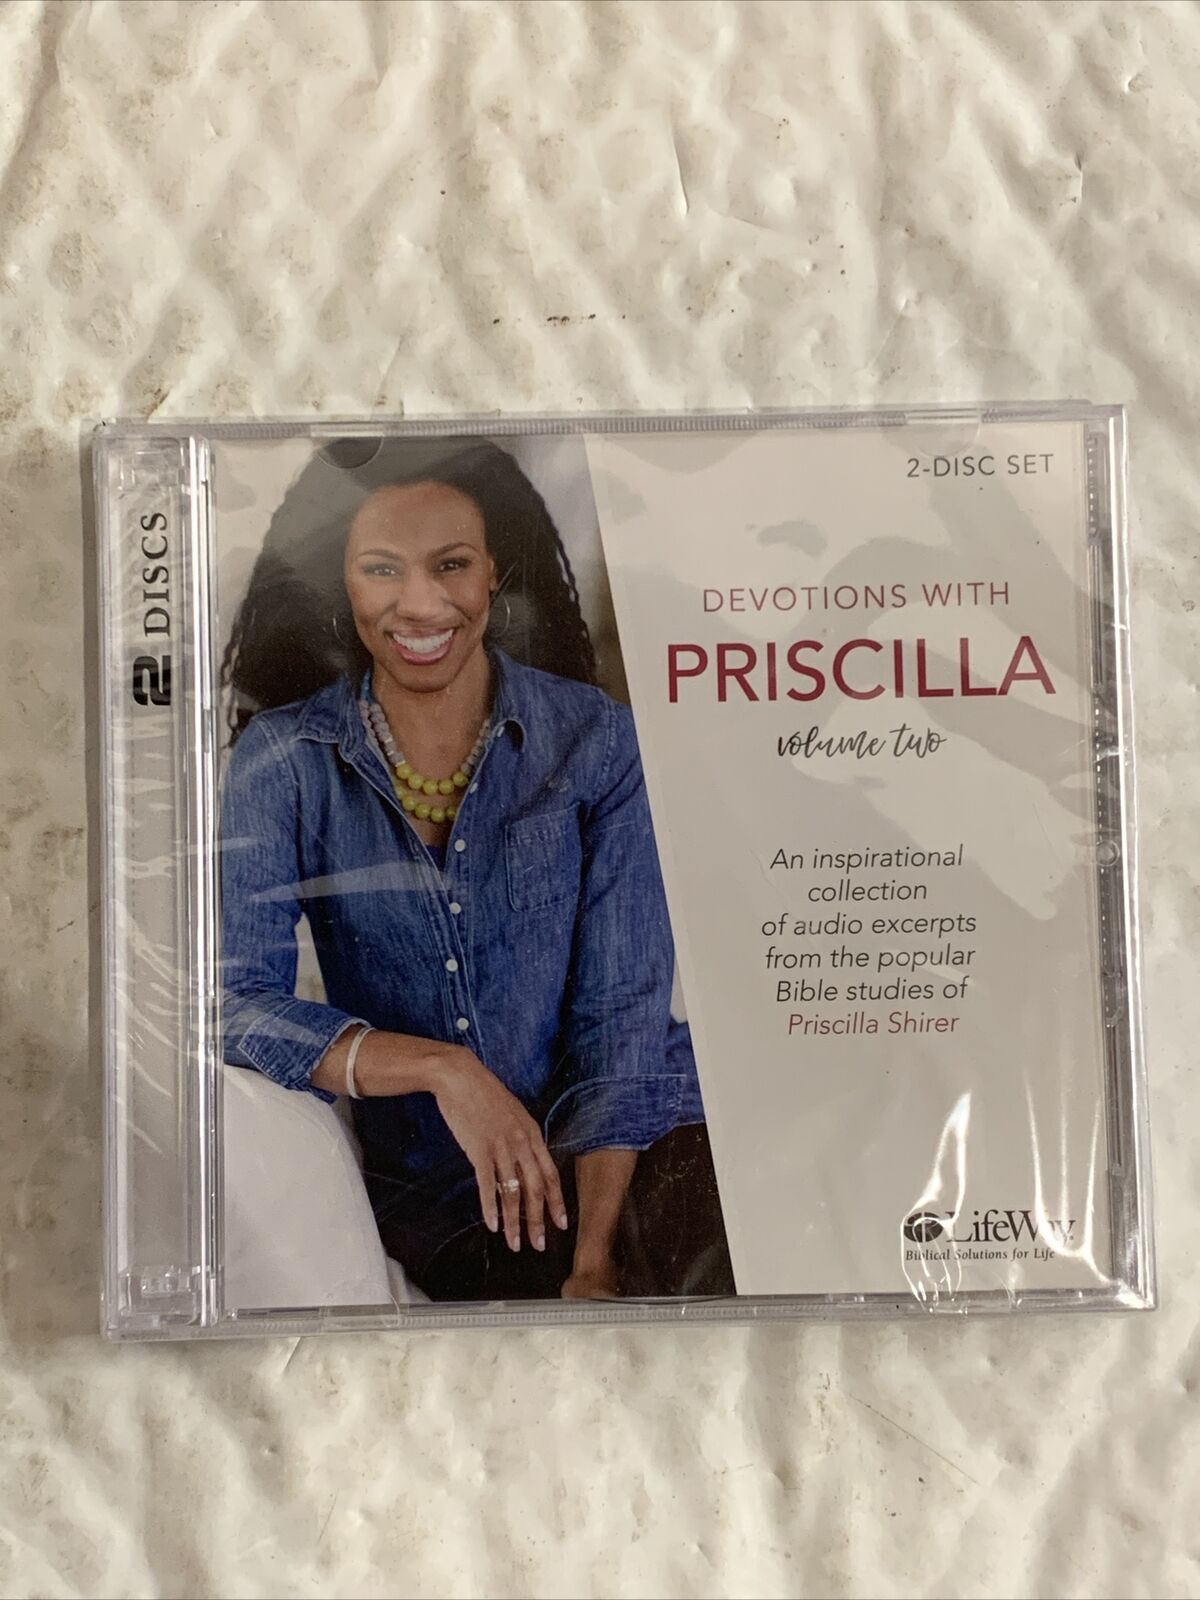 Devotions With Priscilla Volume 2 (2-CD) Non-Music, Spoken Word.